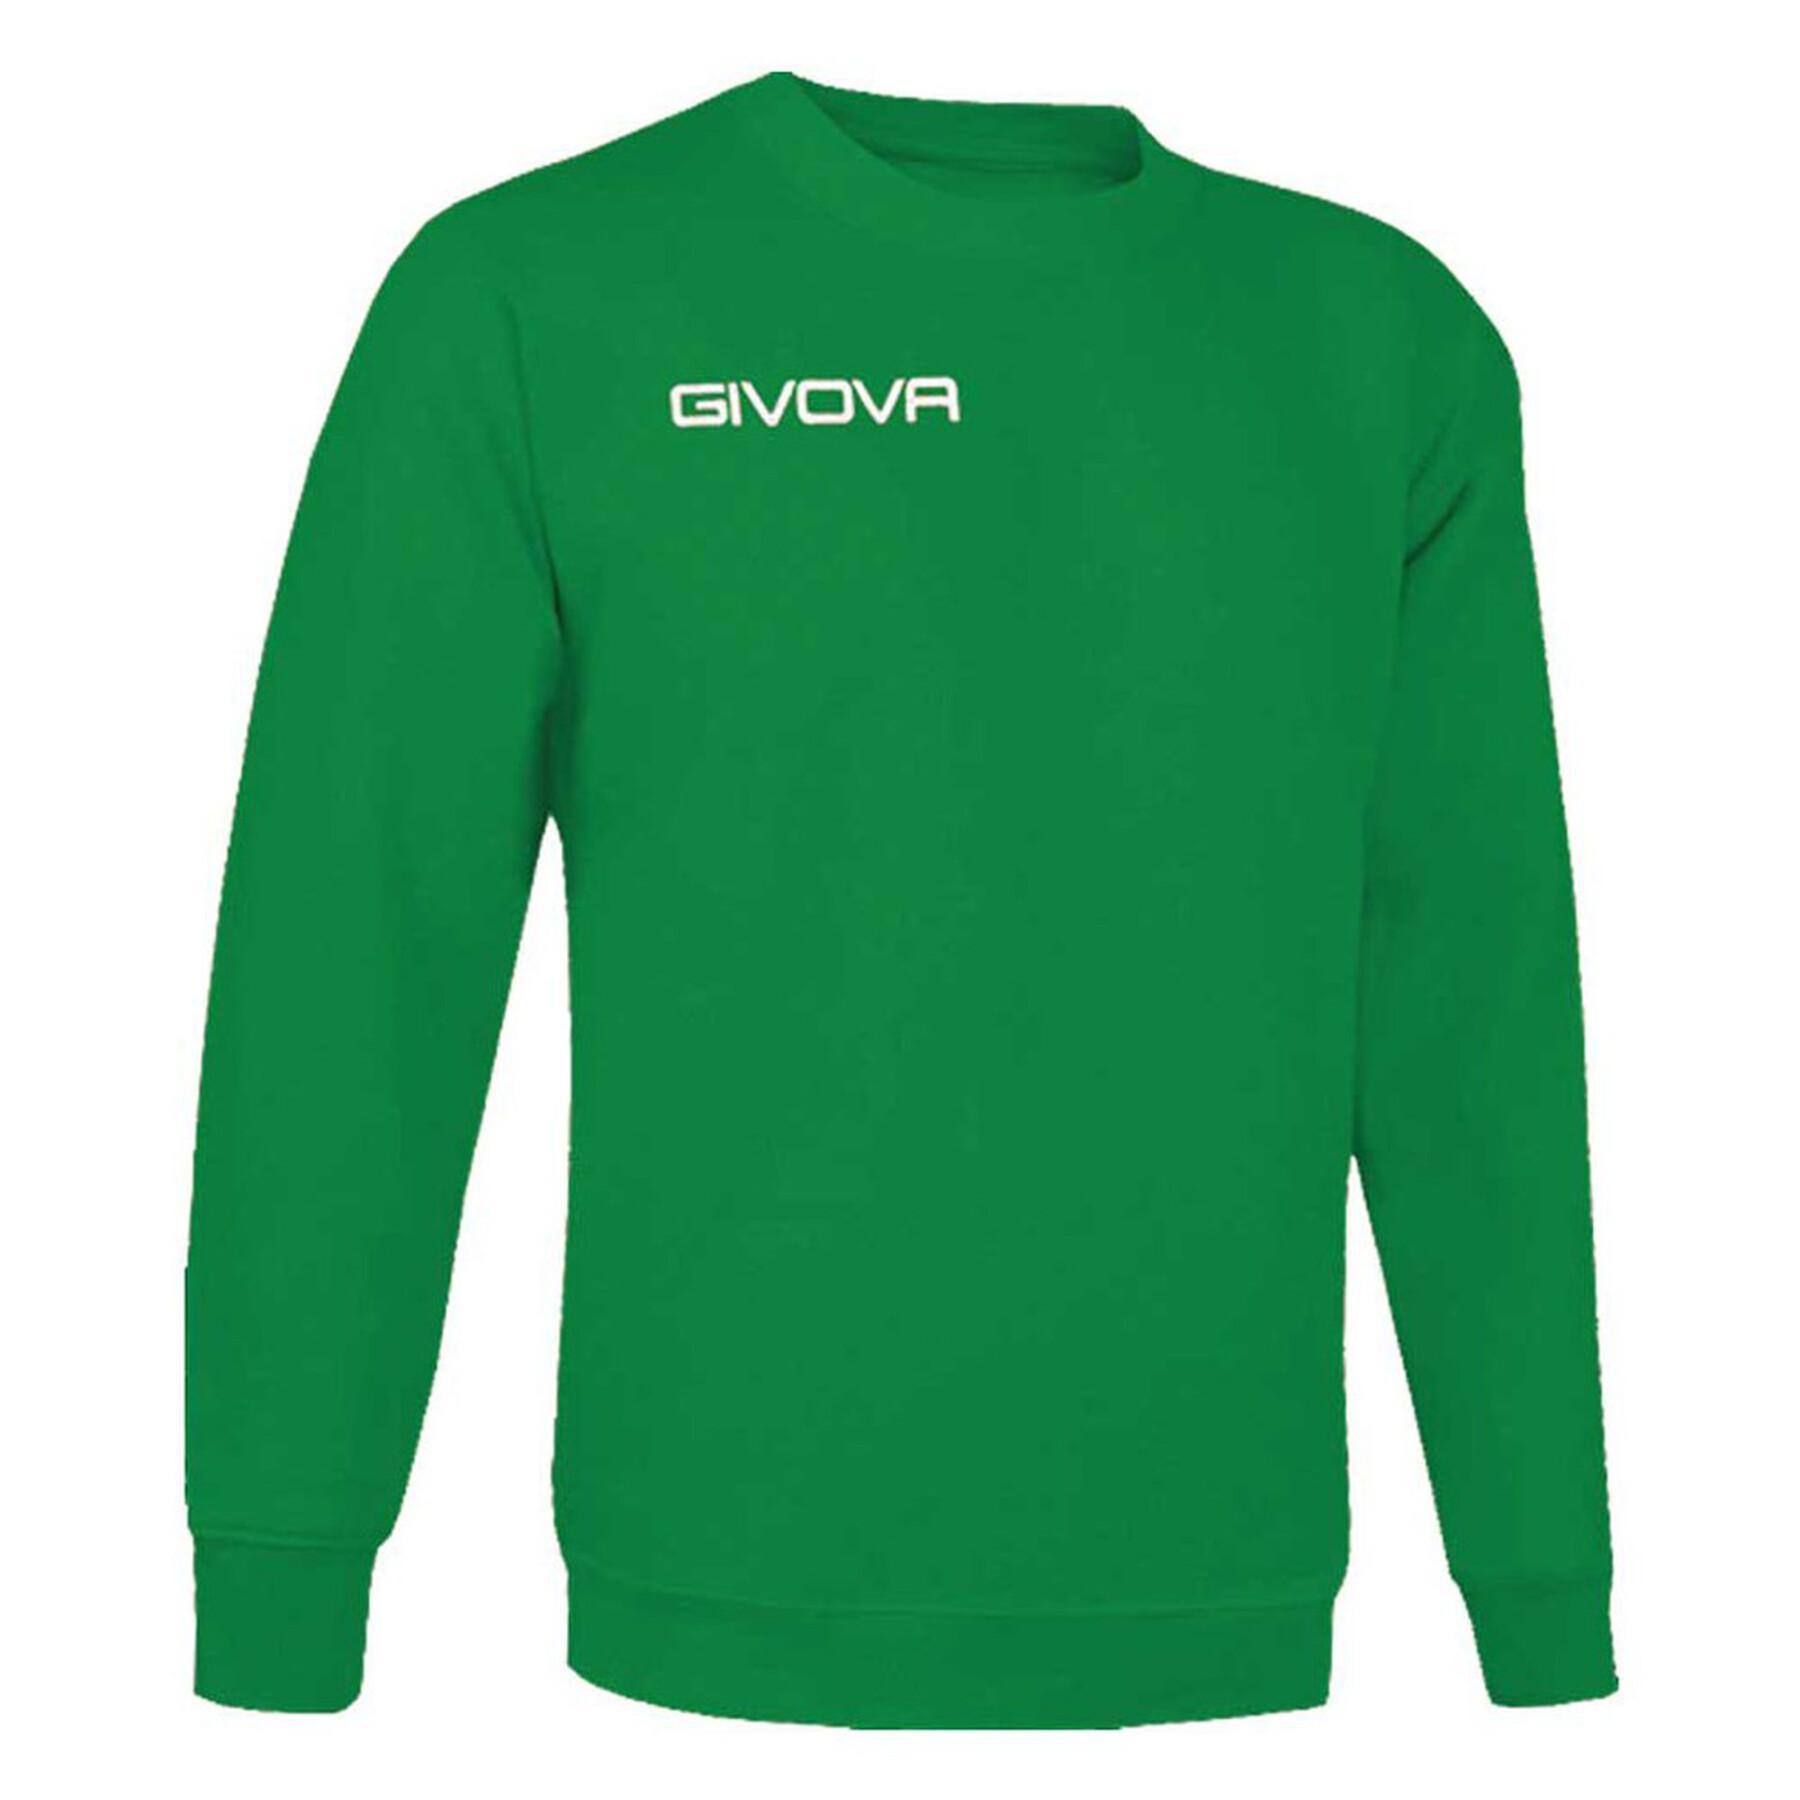 Sweatshirt Kinderfleece Givova One